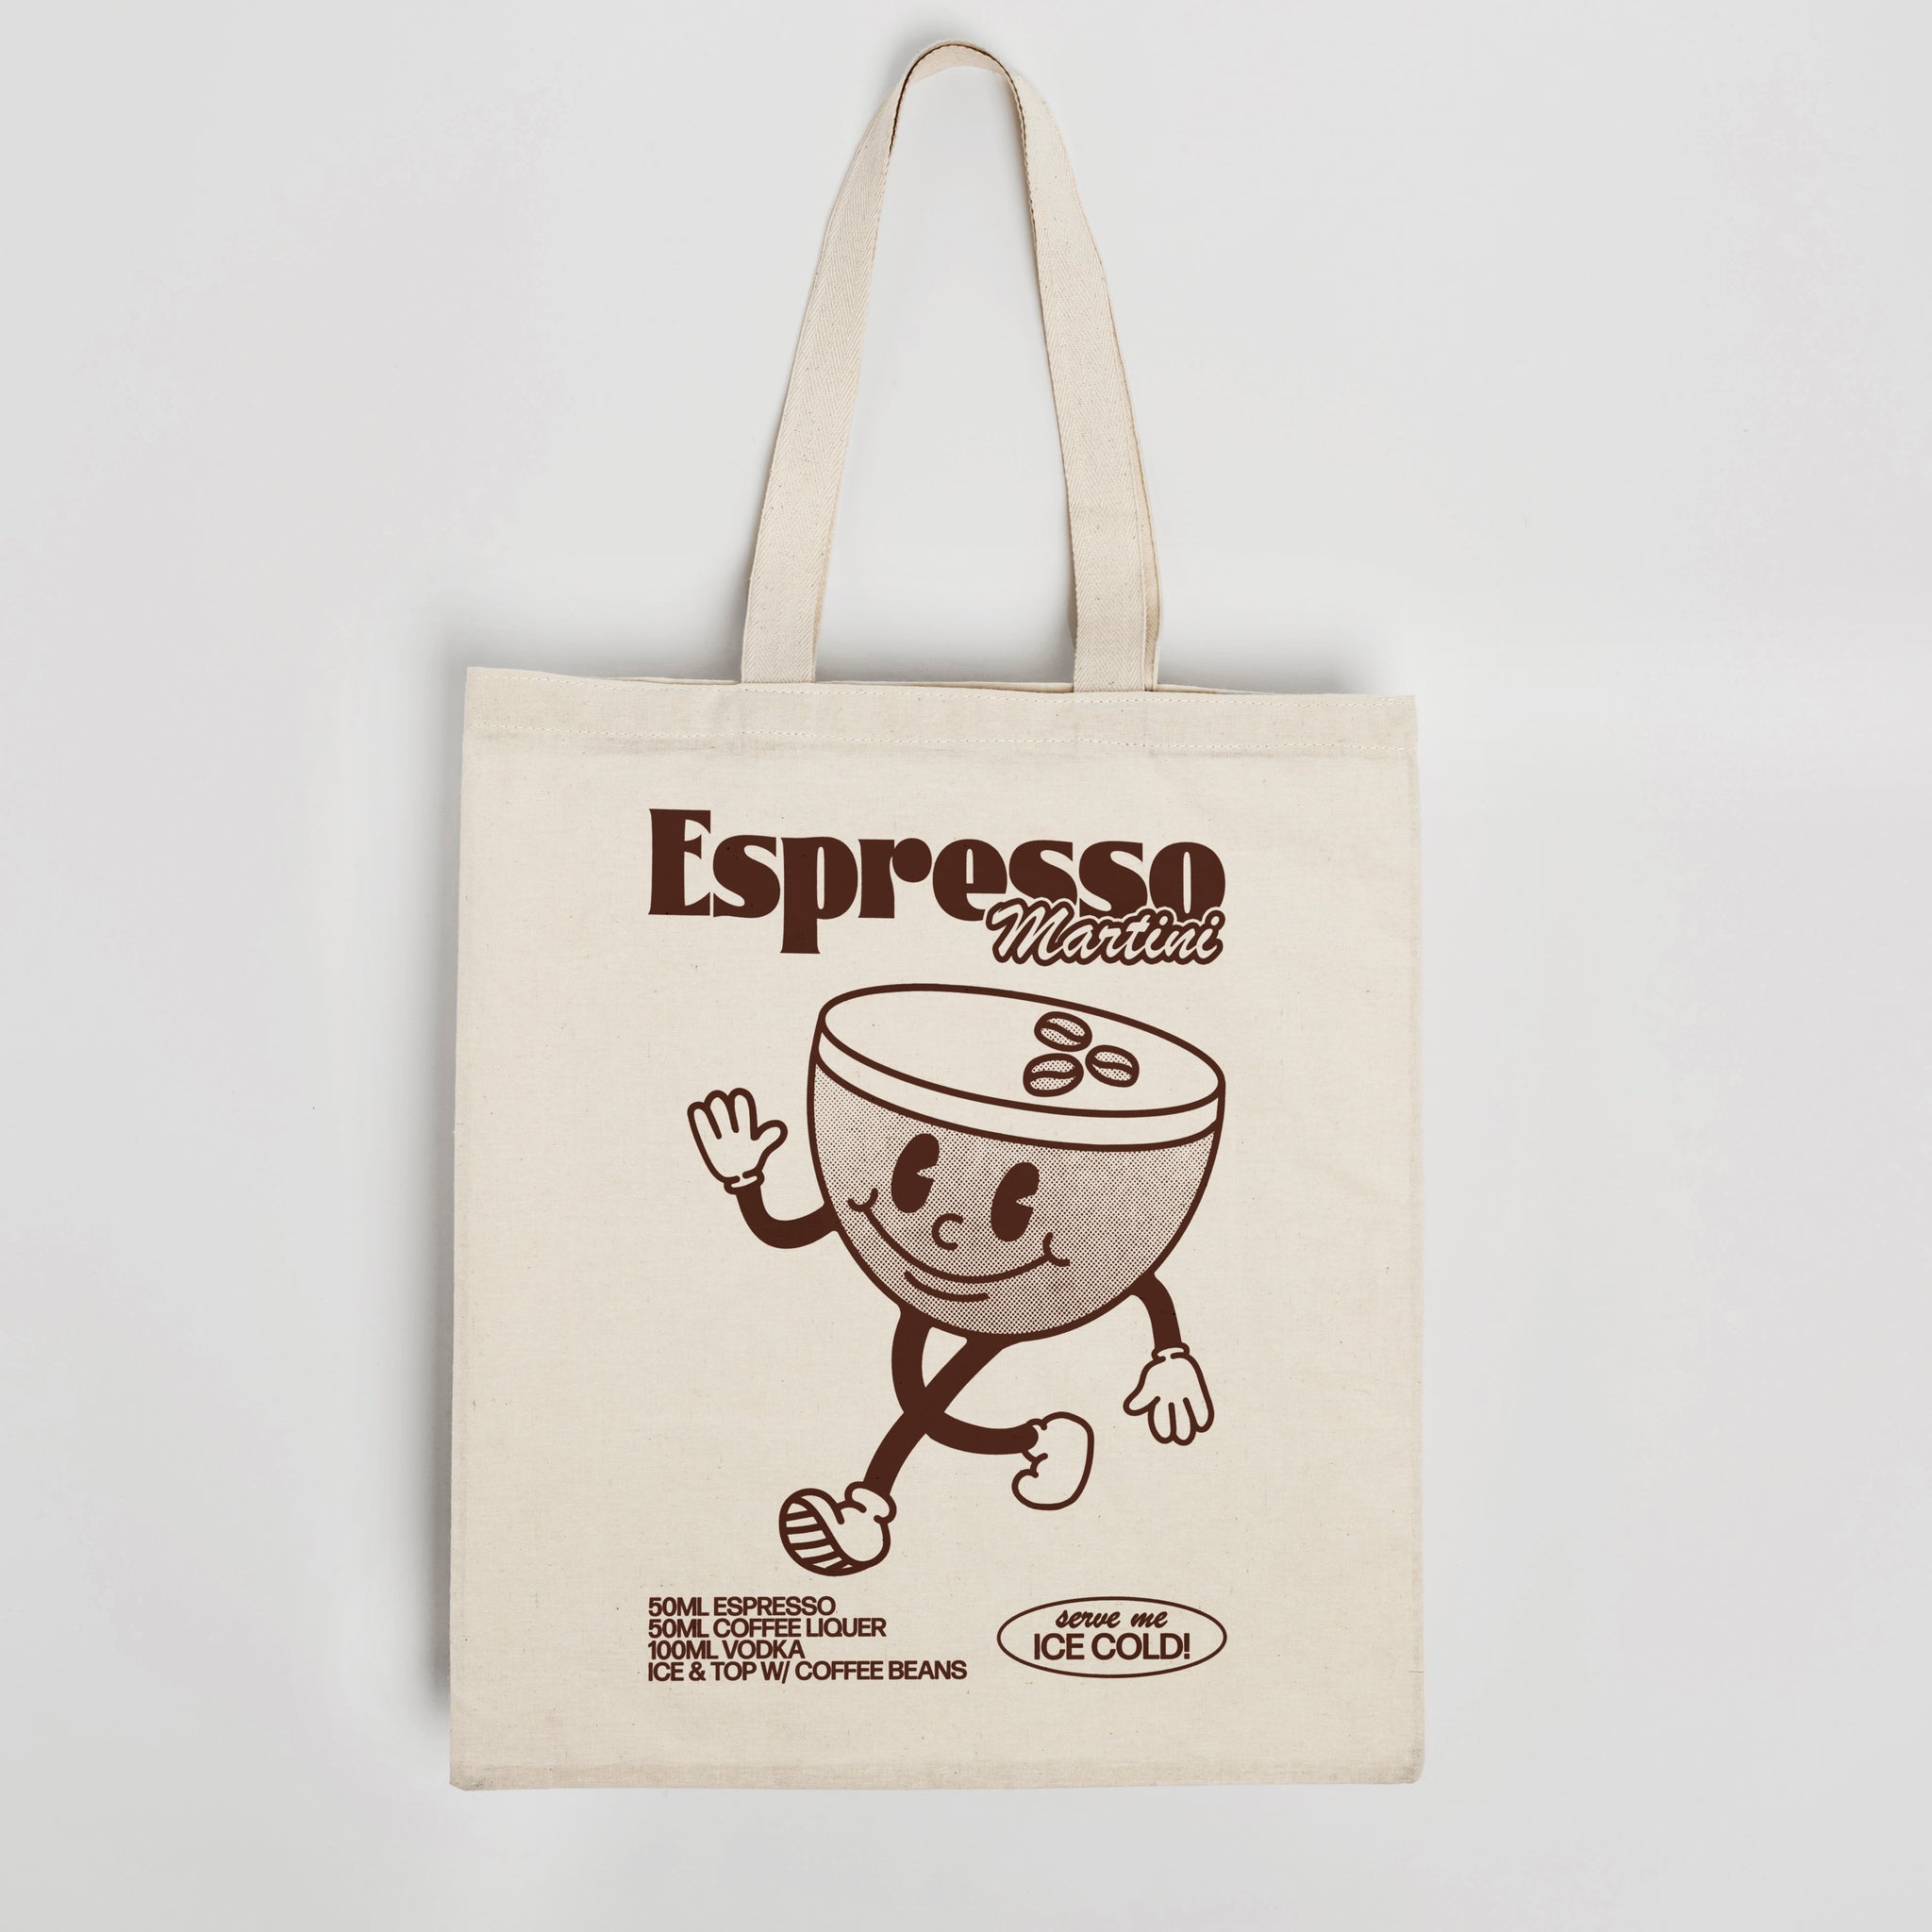 'Espresso Martini' organic cotton canvas tote bag